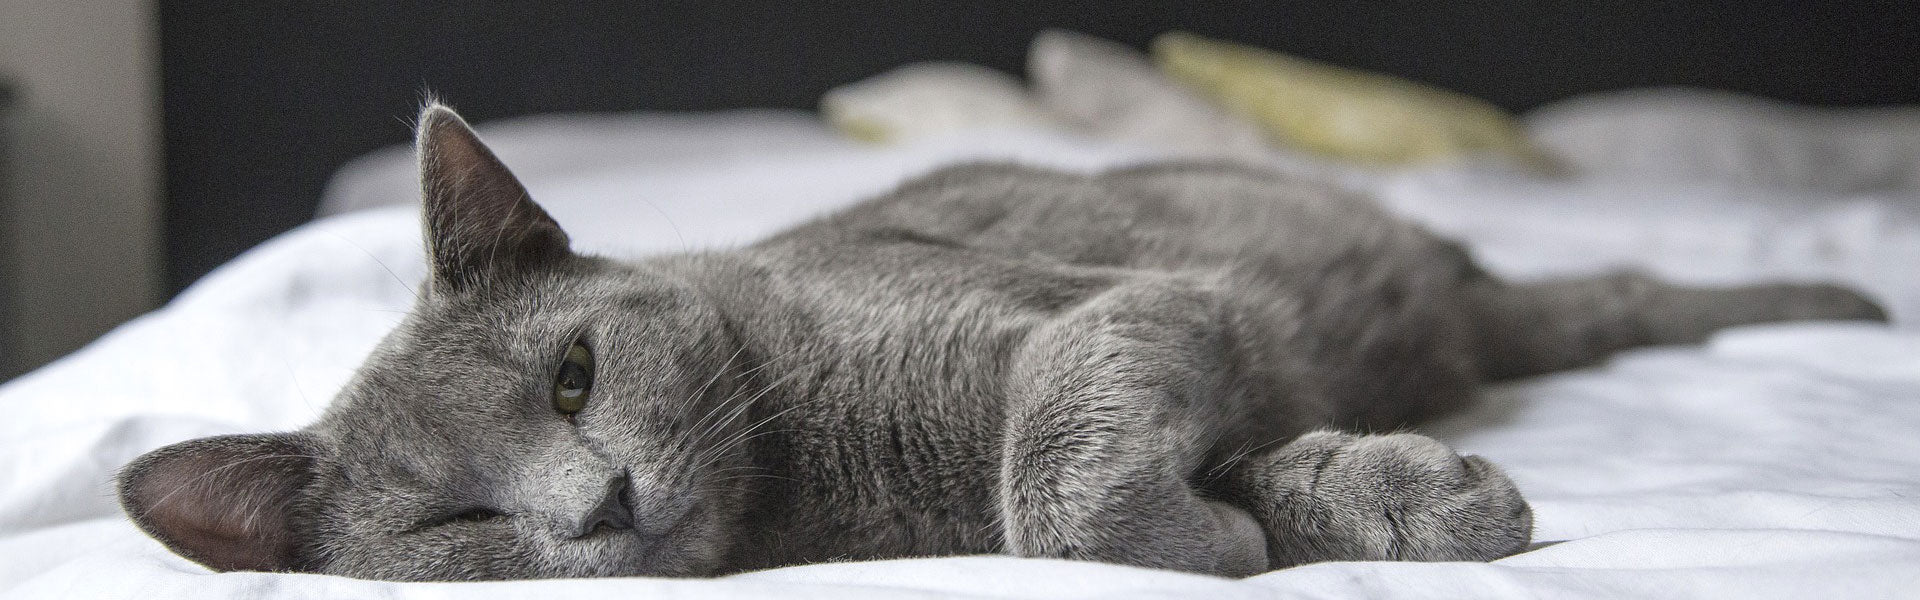 Un chat gris endormi allongé sur un lit.